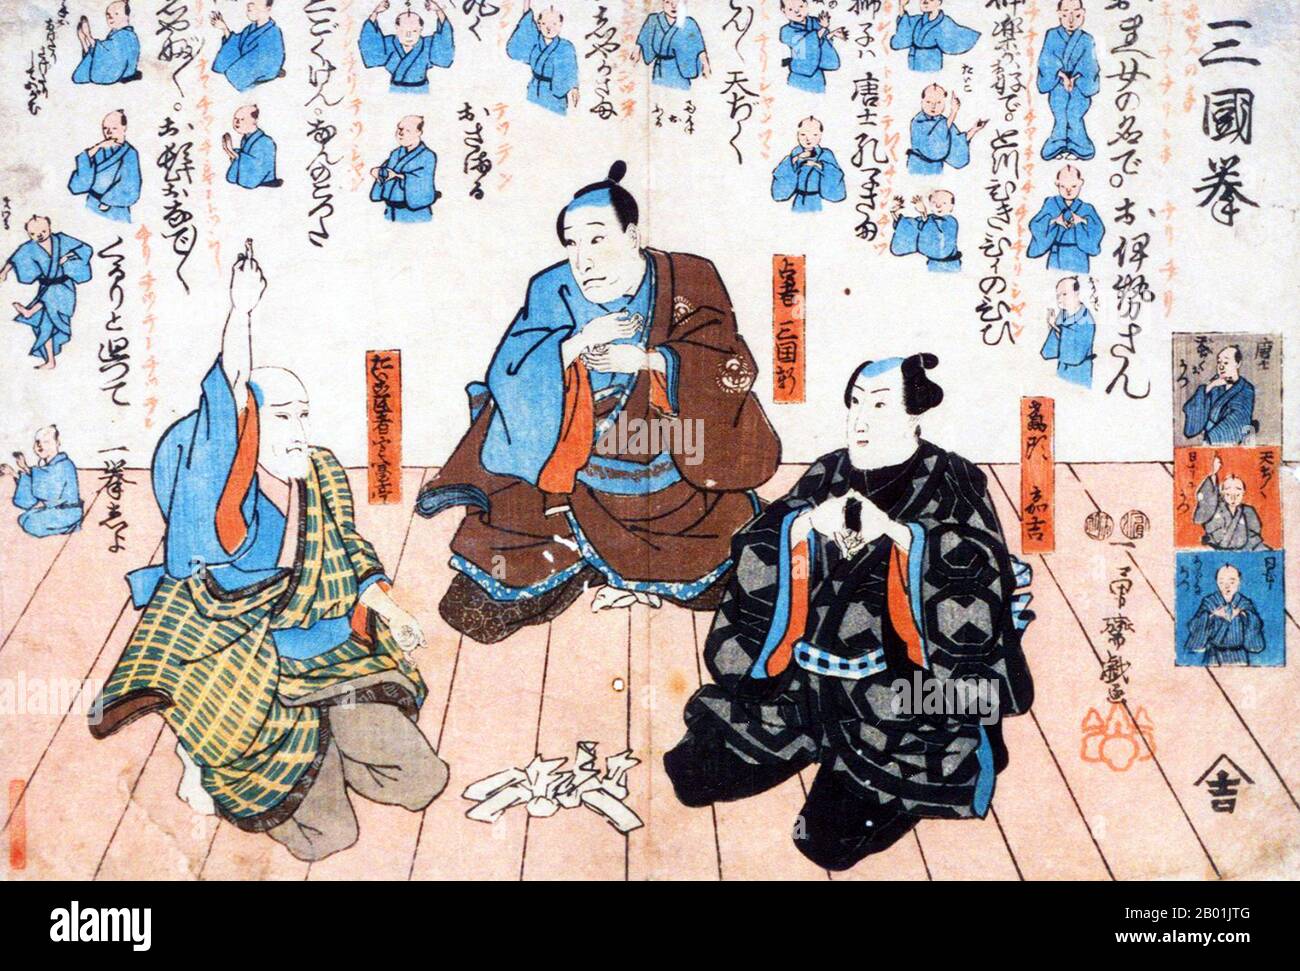 Japan: Die Schauspieler Nakamura Utaemon IV, Ichikawa Kuzô II und Matsumoto Kôshirô VI spielen das Spiel Ken. Ukiyo-e Holzschnitt von Utagawa Kuniyoshi (1. Januar 1797 - 14. April 1862), 1849. Utagawa Kuniyoshi war einer der letzten großen Meister des japanischen Ukiyo-e-Stils der Holzschnitte und Malerei. Er ist mit der Utagawa-Schule verbunden. Kuniyoshis bevorzugte Themen umfassten viele Genres: Landschaften, schöne Frauen, Kabuki-Schauspieler, Katzen und mythische Tiere. Er ist bekannt für die Darstellung der Schlachten von Samurai und legendären Helden. Stockfoto